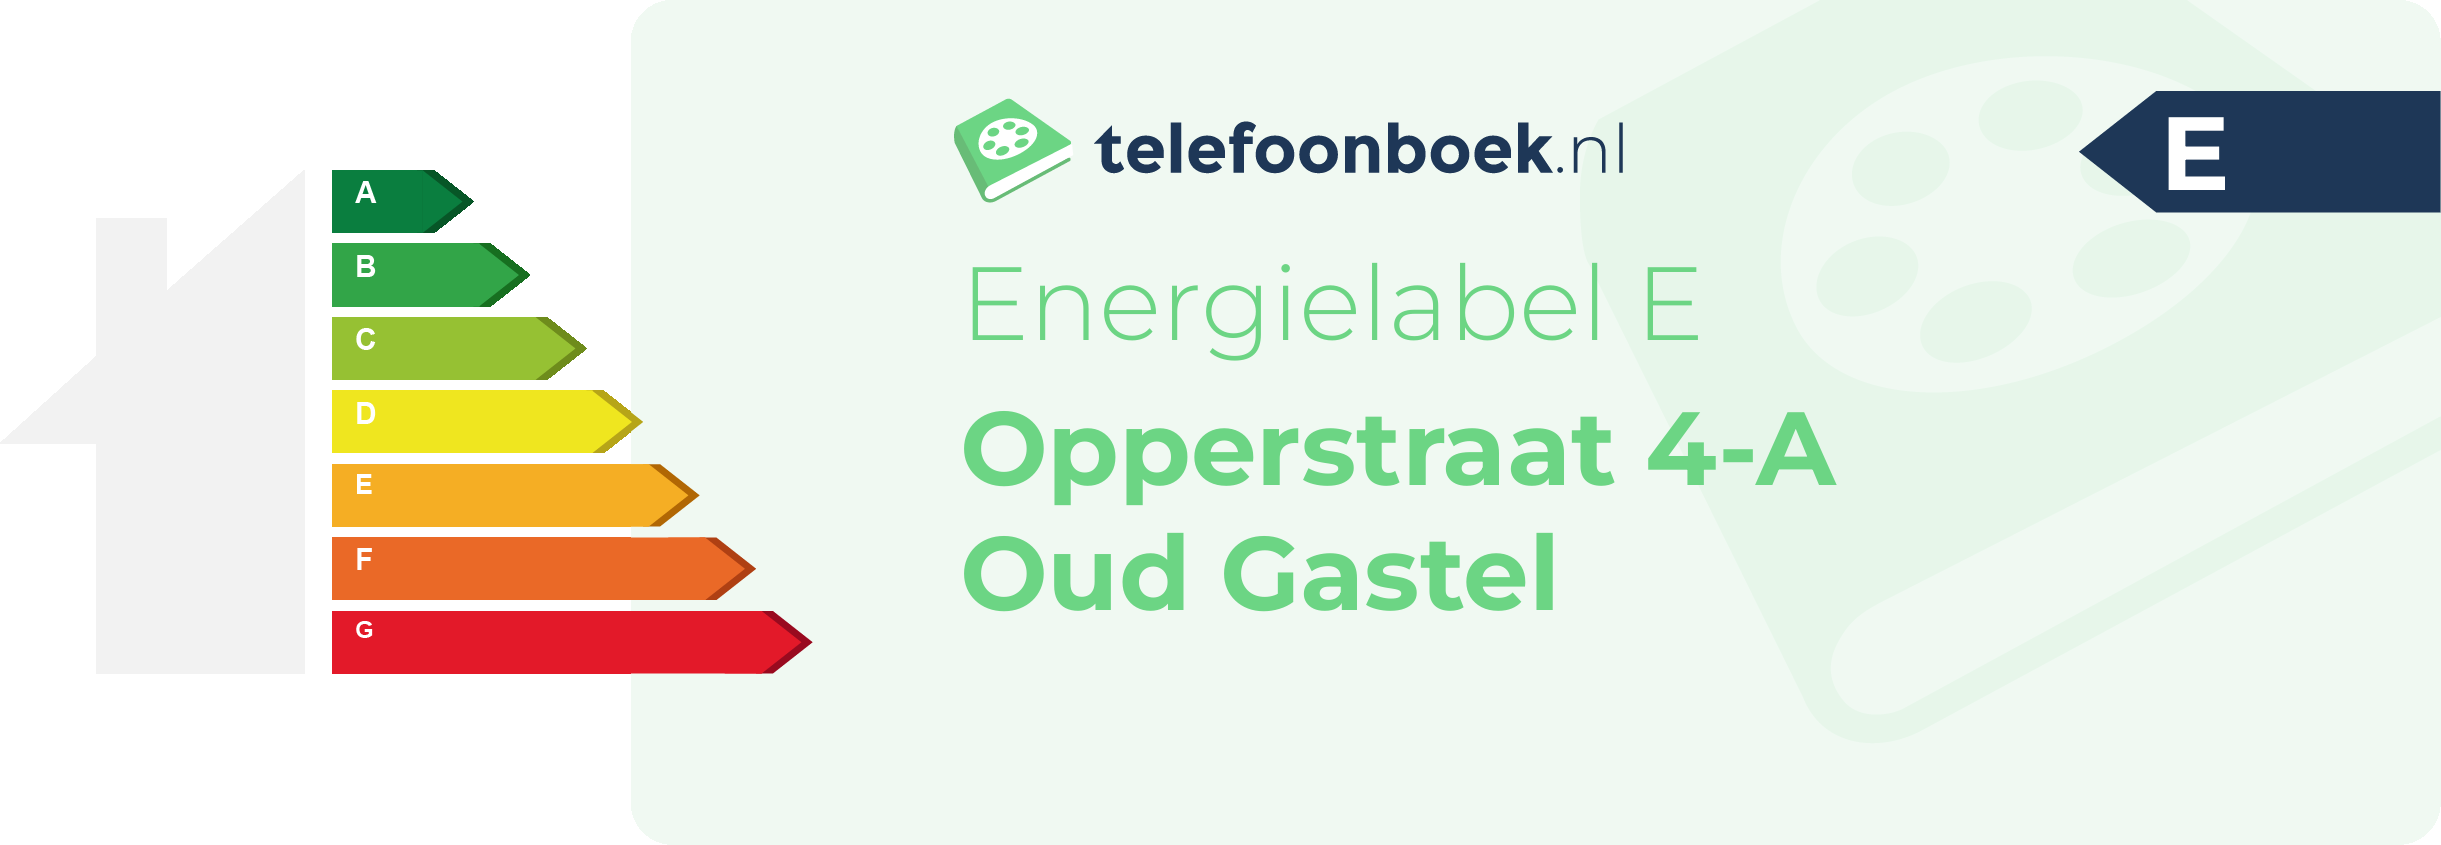 Energielabel Opperstraat 4-A Oud Gastel